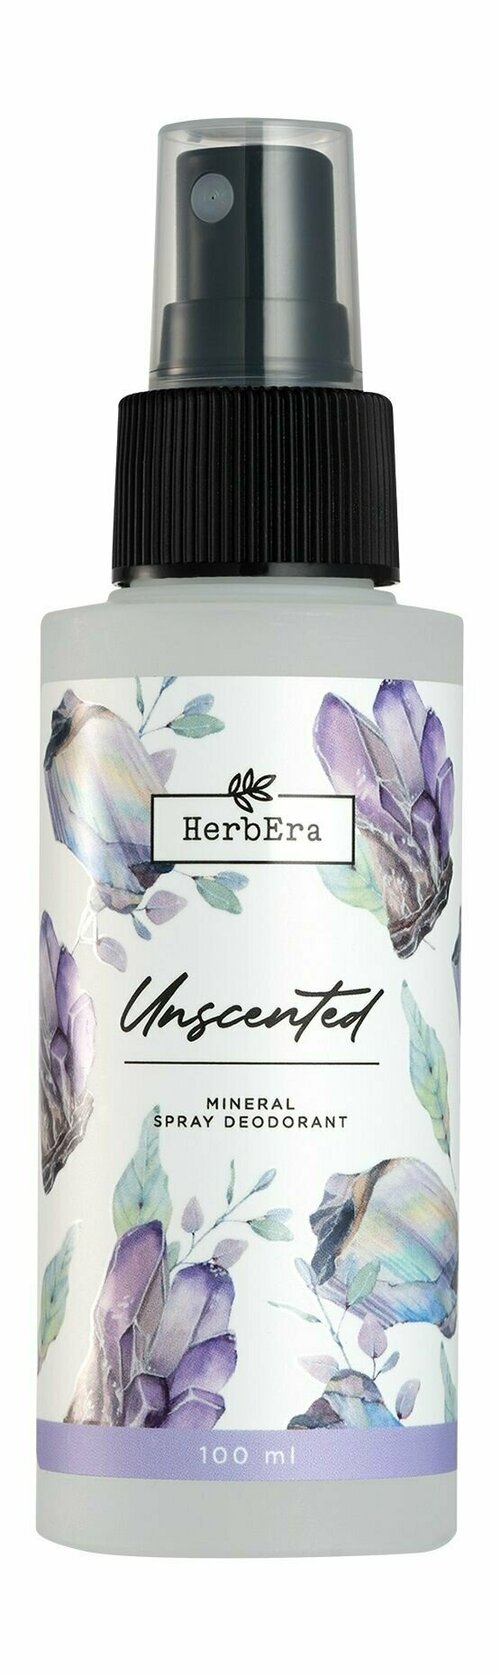 Минеральный дезодорант-спрей без запаха / HerbEra Unscented Mineral Spray Deodorant